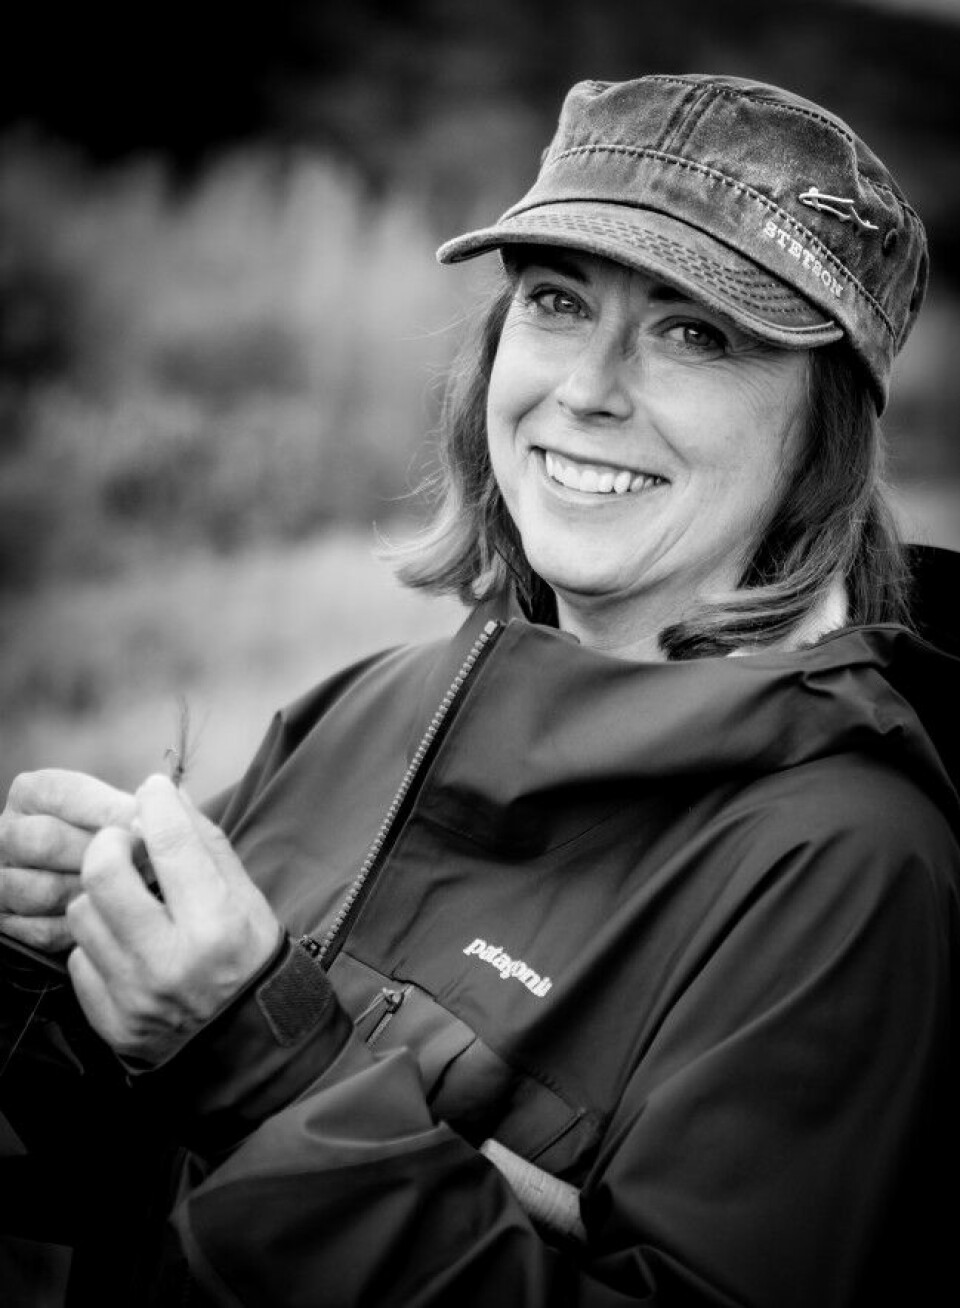 Marit Skandfer fra Tønsberg er lidenskapelig fluefisker. Sommerstid er det Finnmark og laks som gjelder, resten av året jakter hun sjøørret og havabbor i Vestfold-skjærgården.